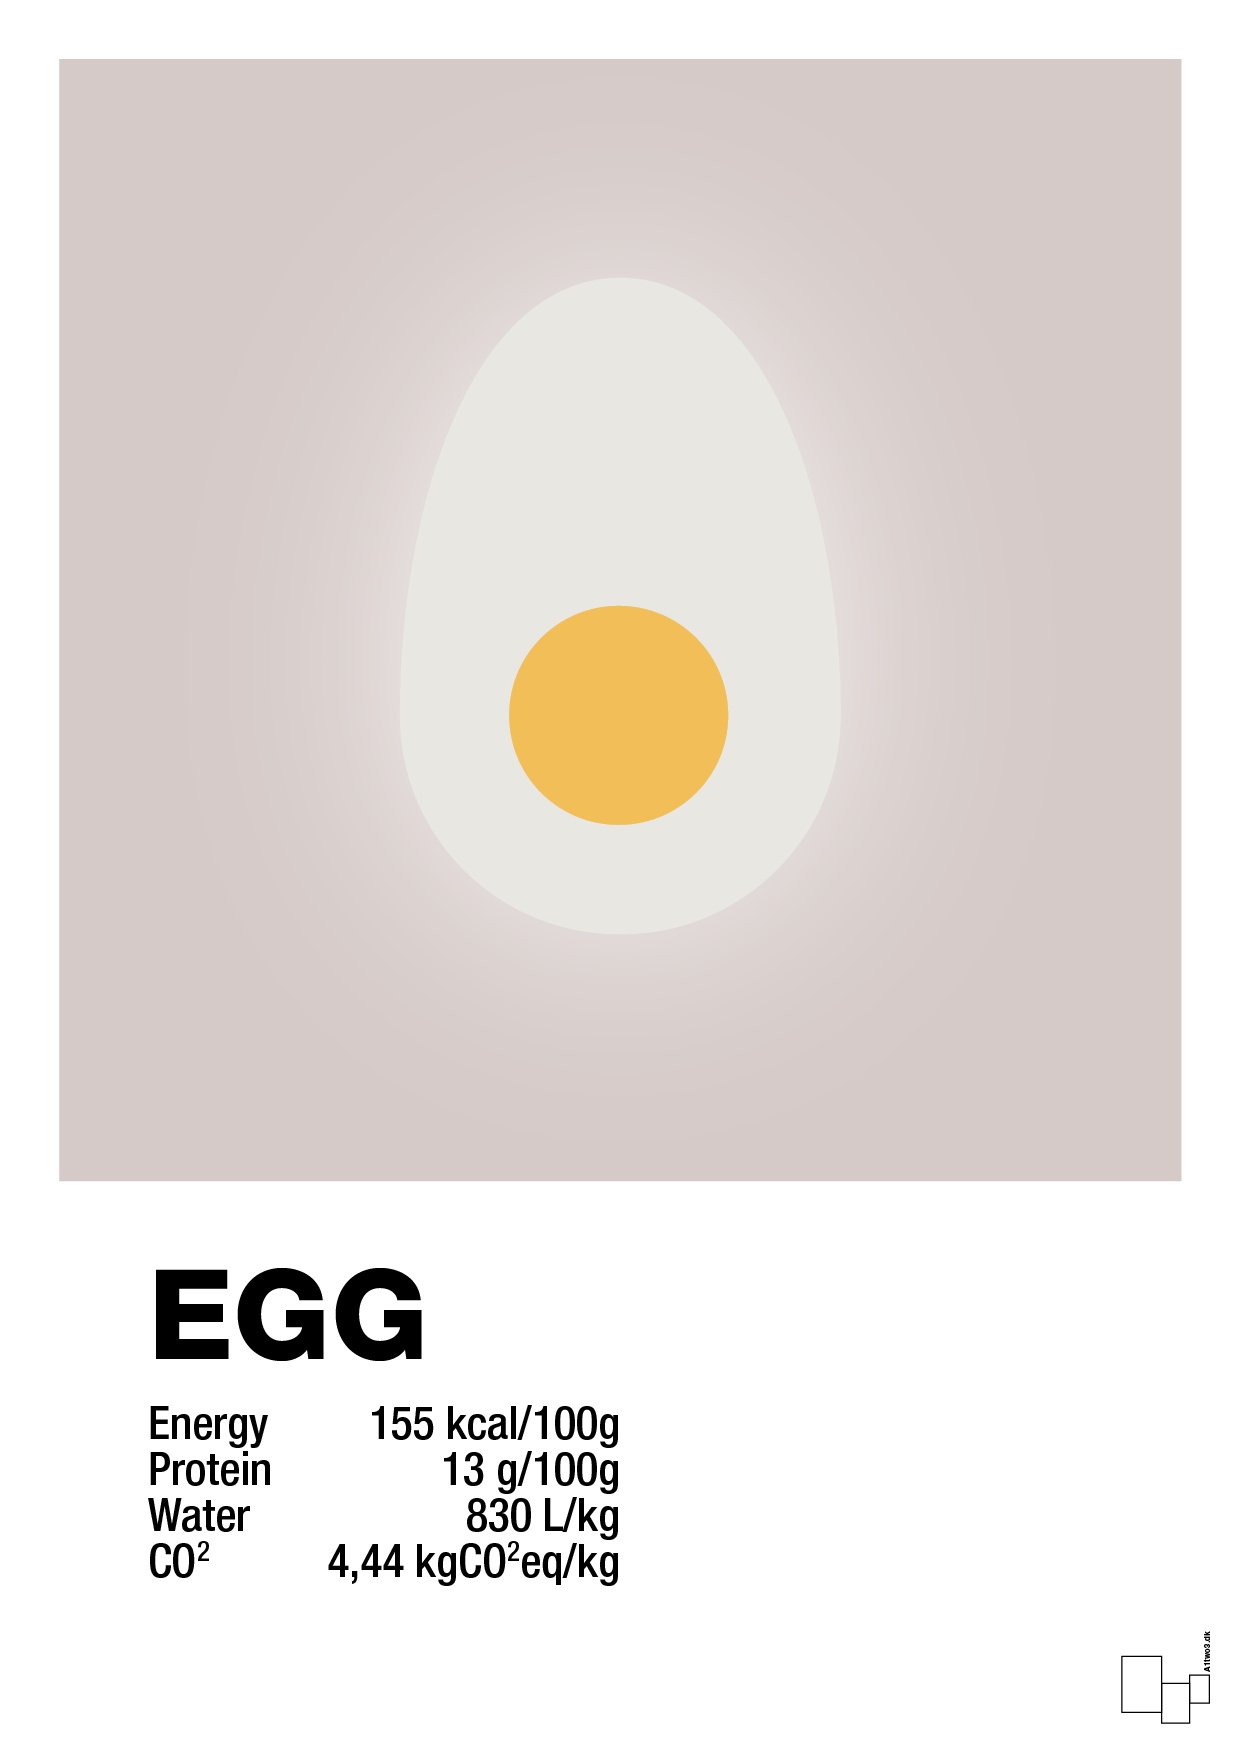 egg nutrition og miljø - Plakat med Mad & Drikke i Broken Beige